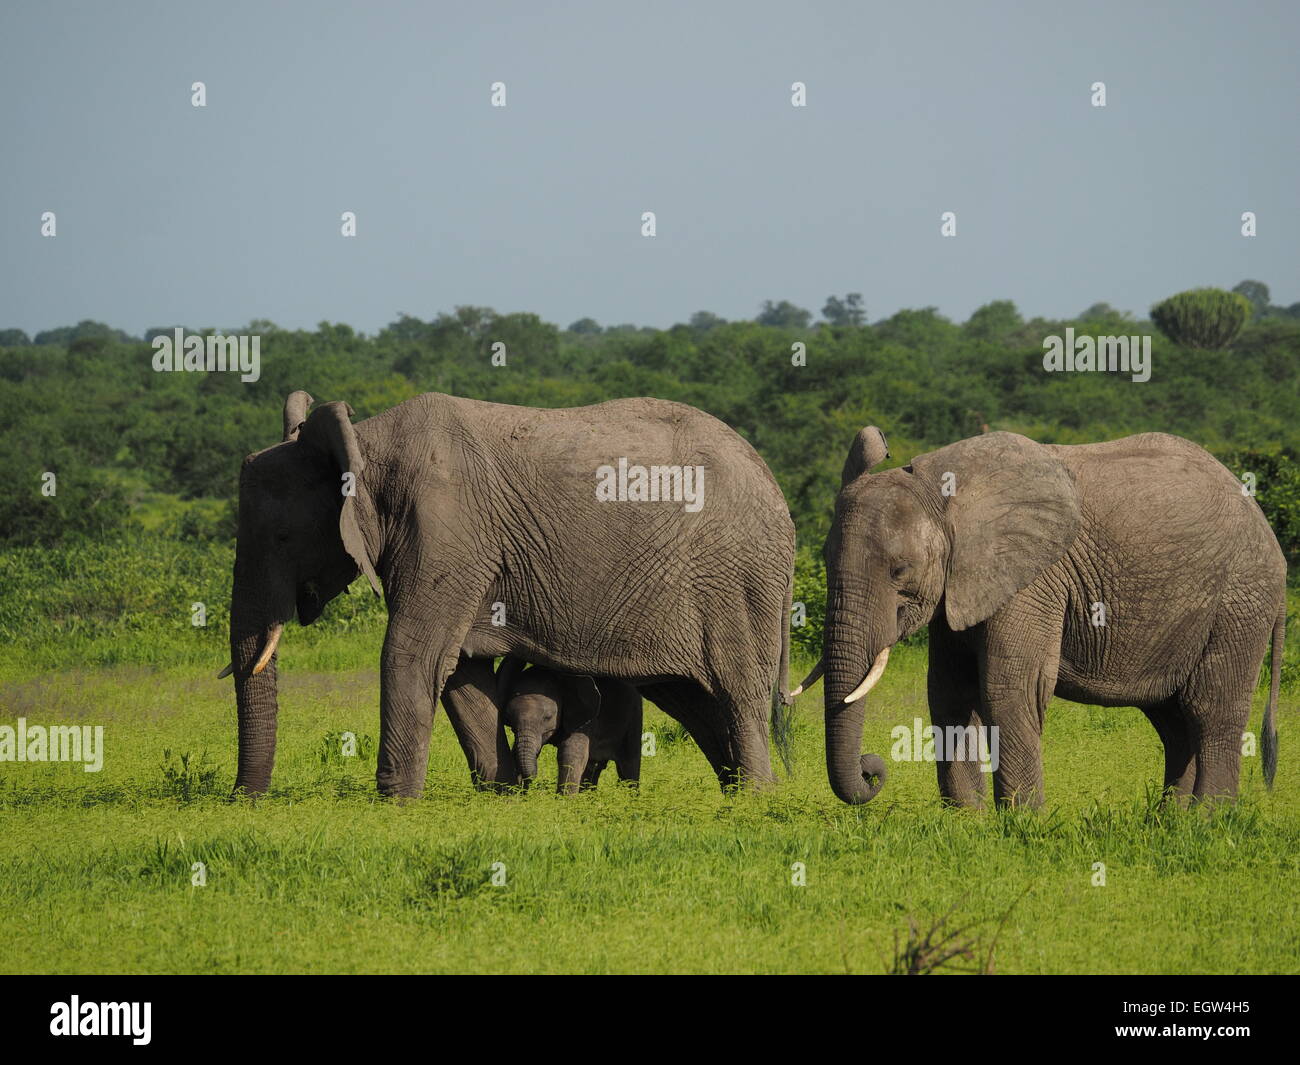 Dos adultos el elefante africano (Loxodonta africana) con pequeños terneros bajo la madre pastando tranquilamente en Ruaha N P Tanzania Foto de stock